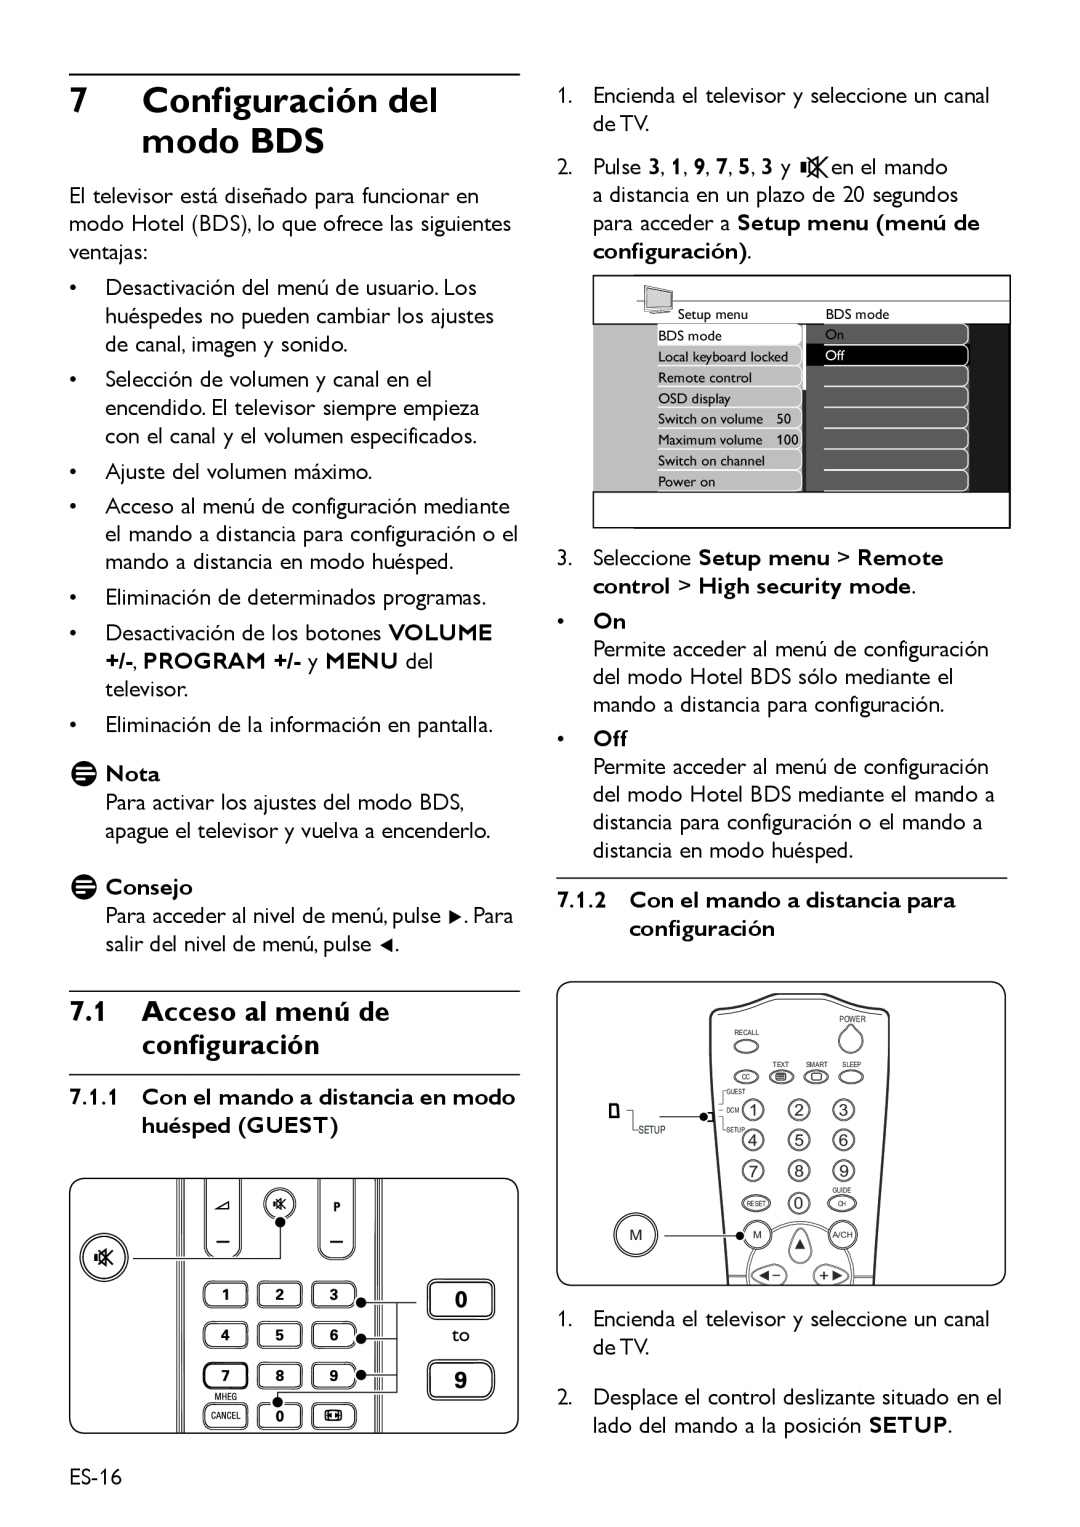 Philips DFU-DEC2008 manual 7Configuración del modo BDS, 7.1Acceso al menú de configuración, DDConsejo, Off, DDNota 